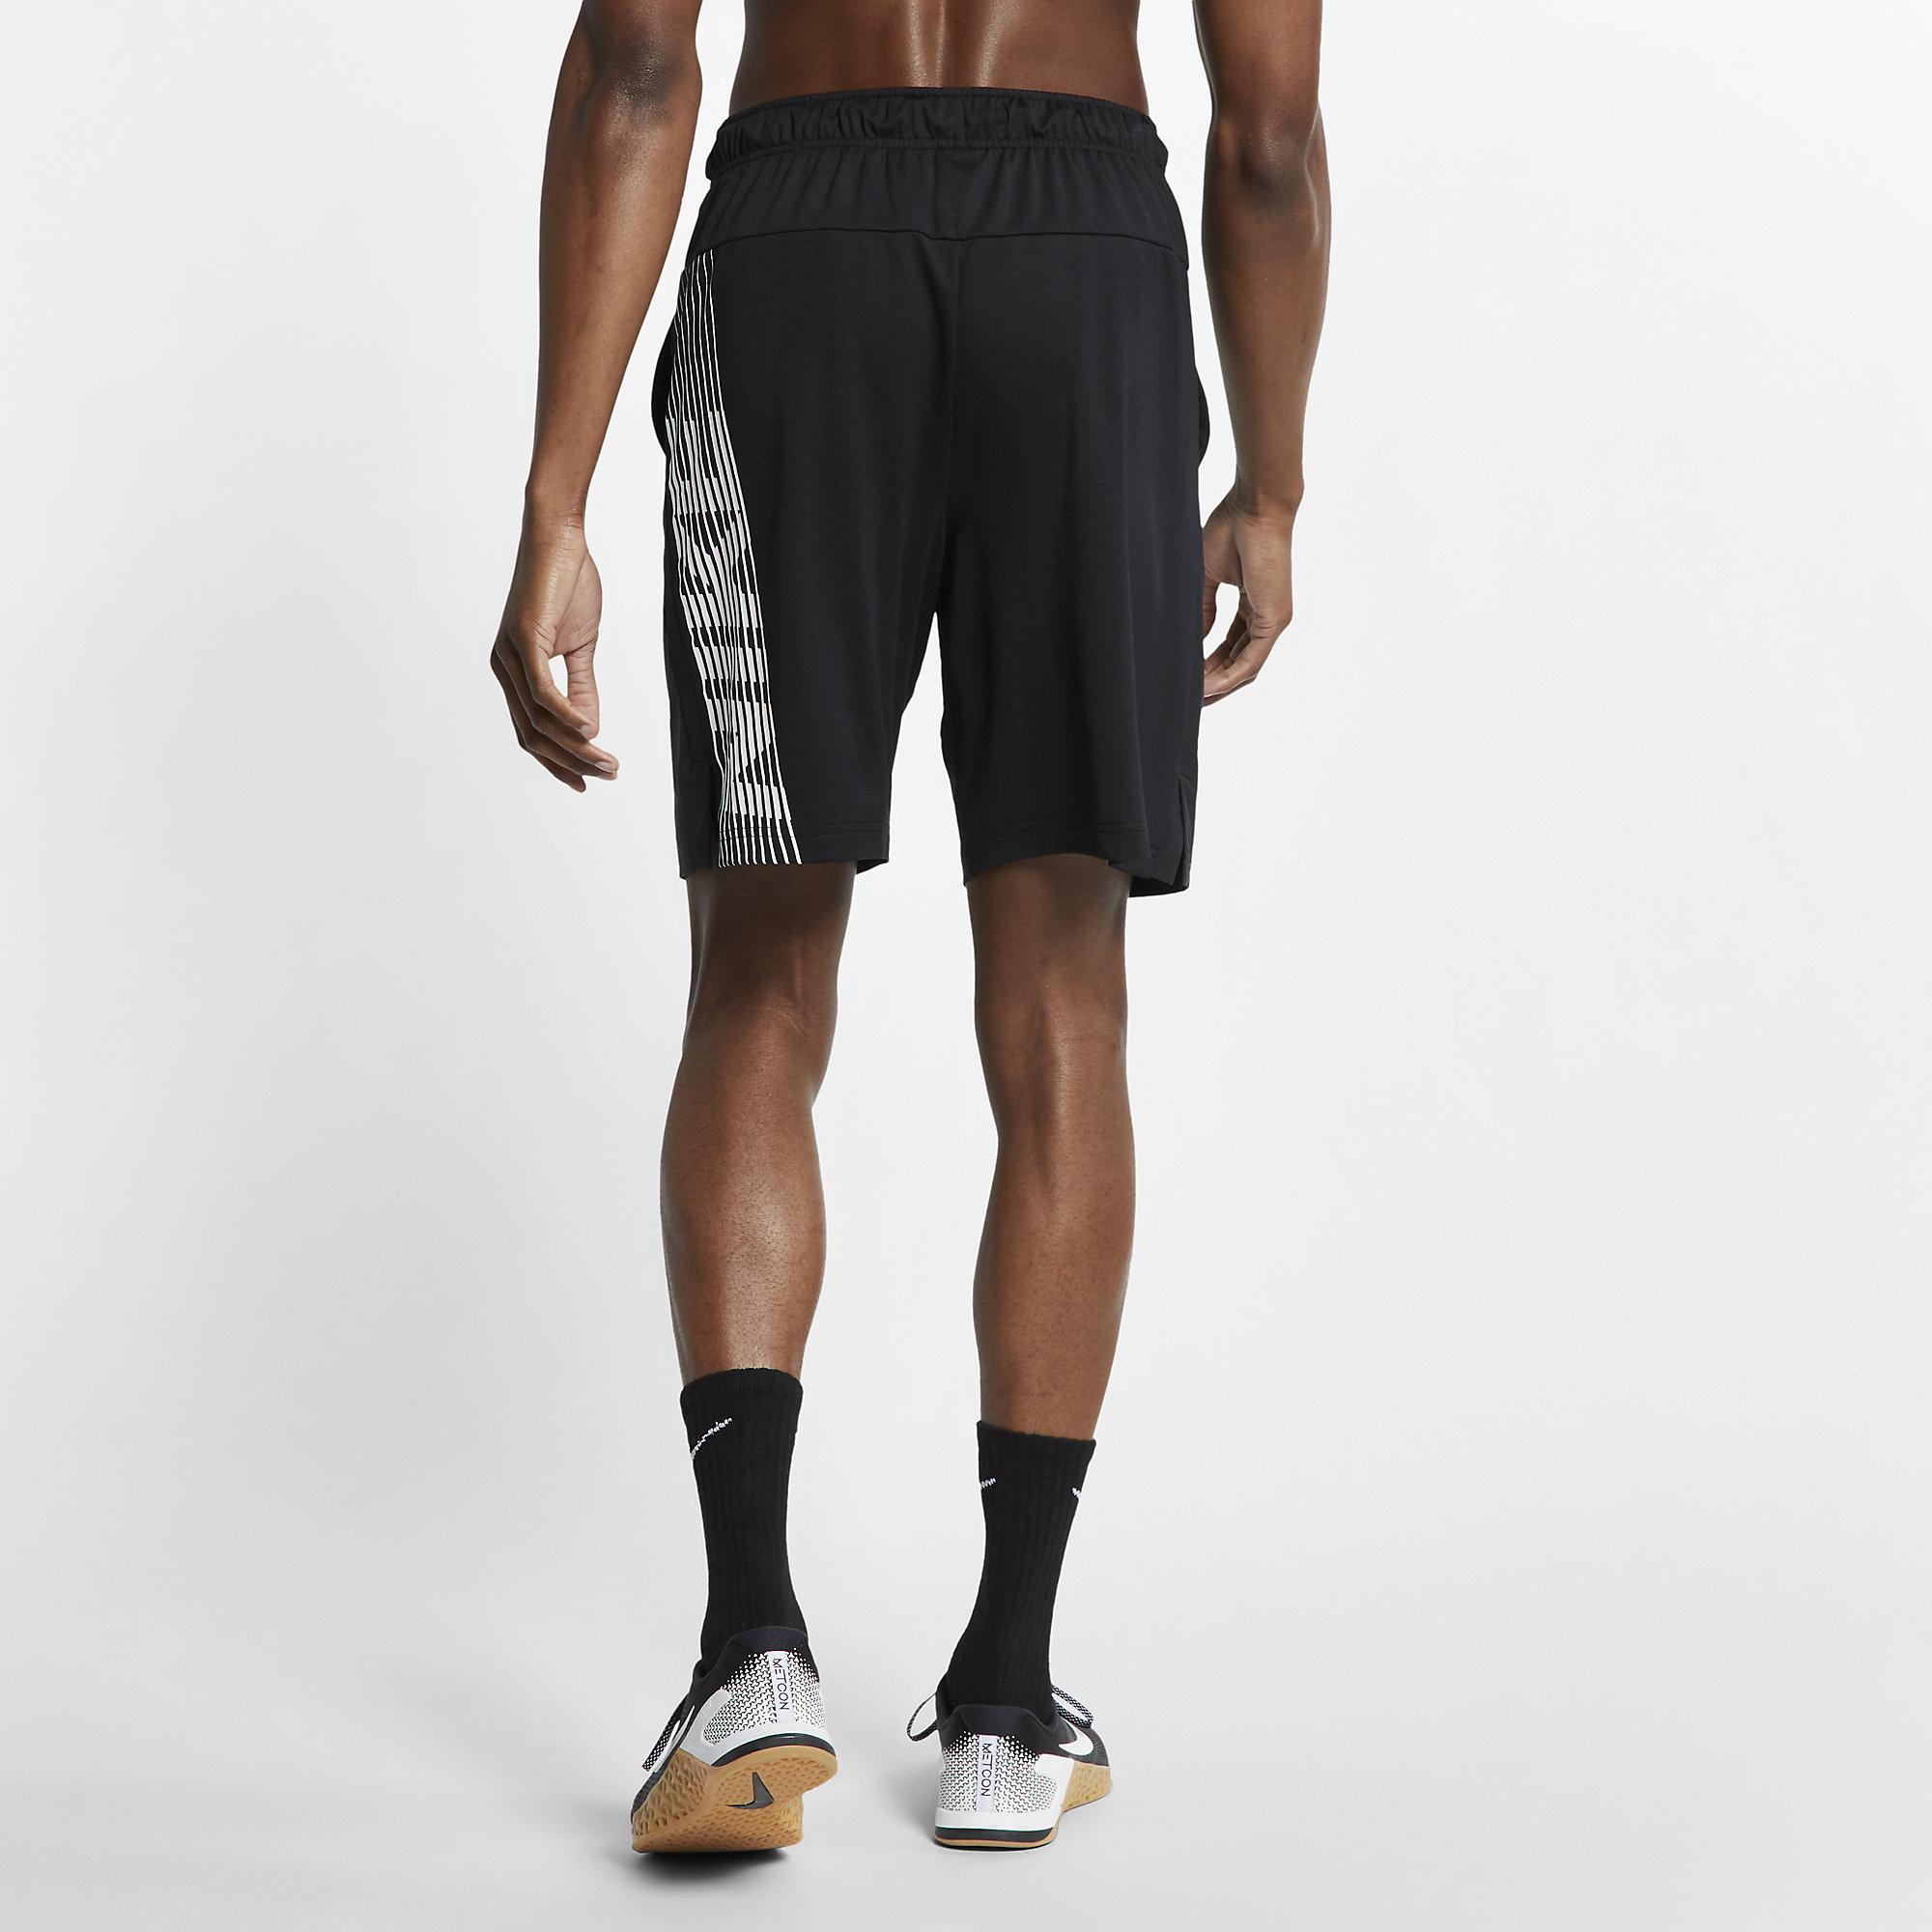 Nike Mens Dri-FIT Shorts - Black - Tennisnuts.com